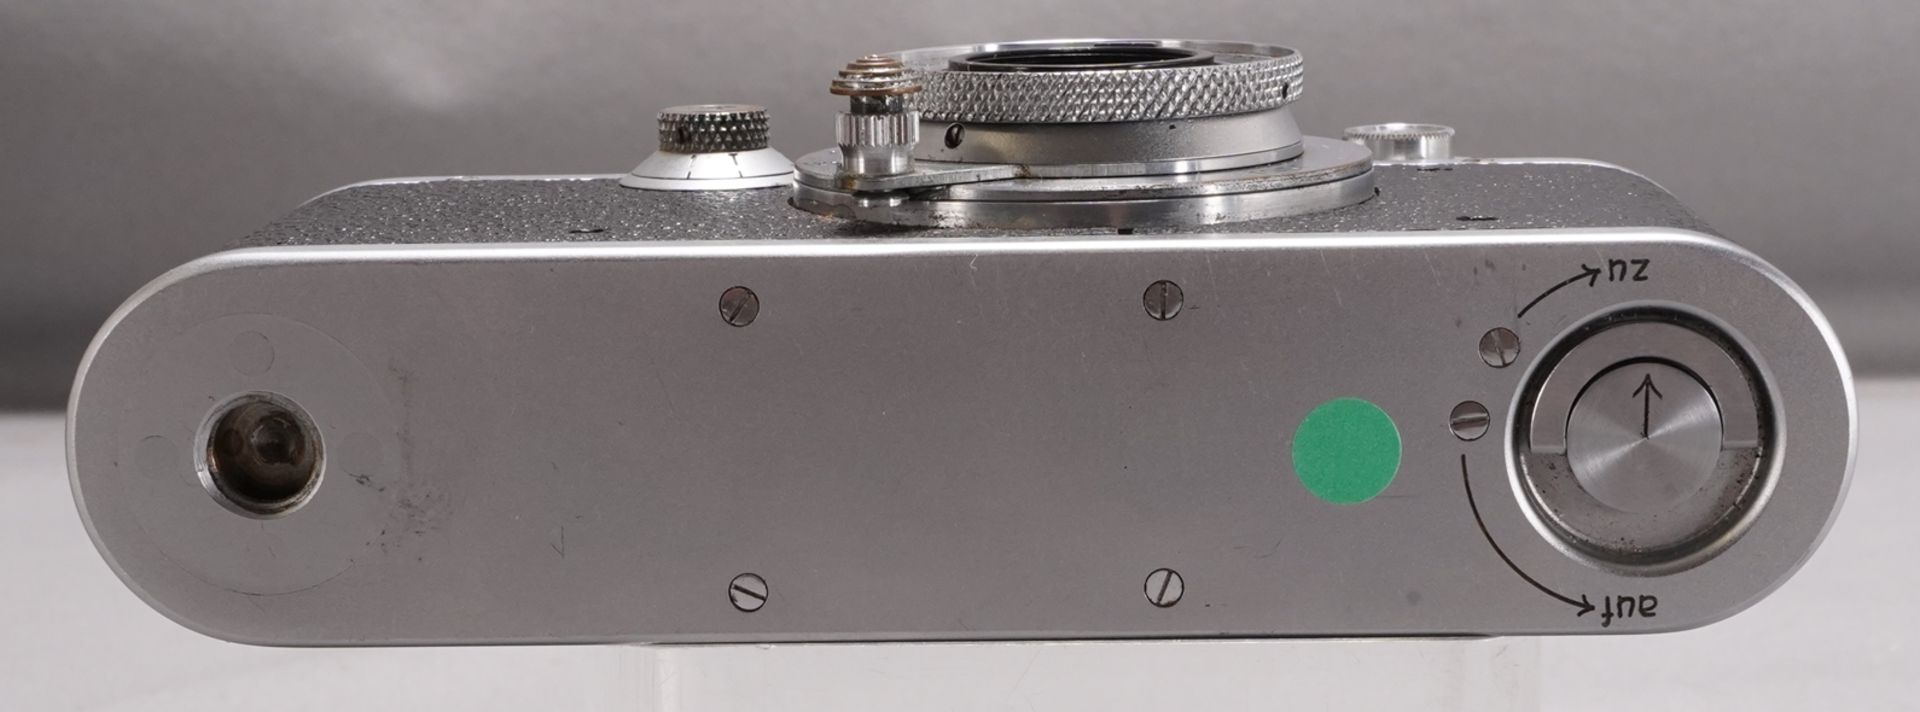 Leica III - Image 5 of 5